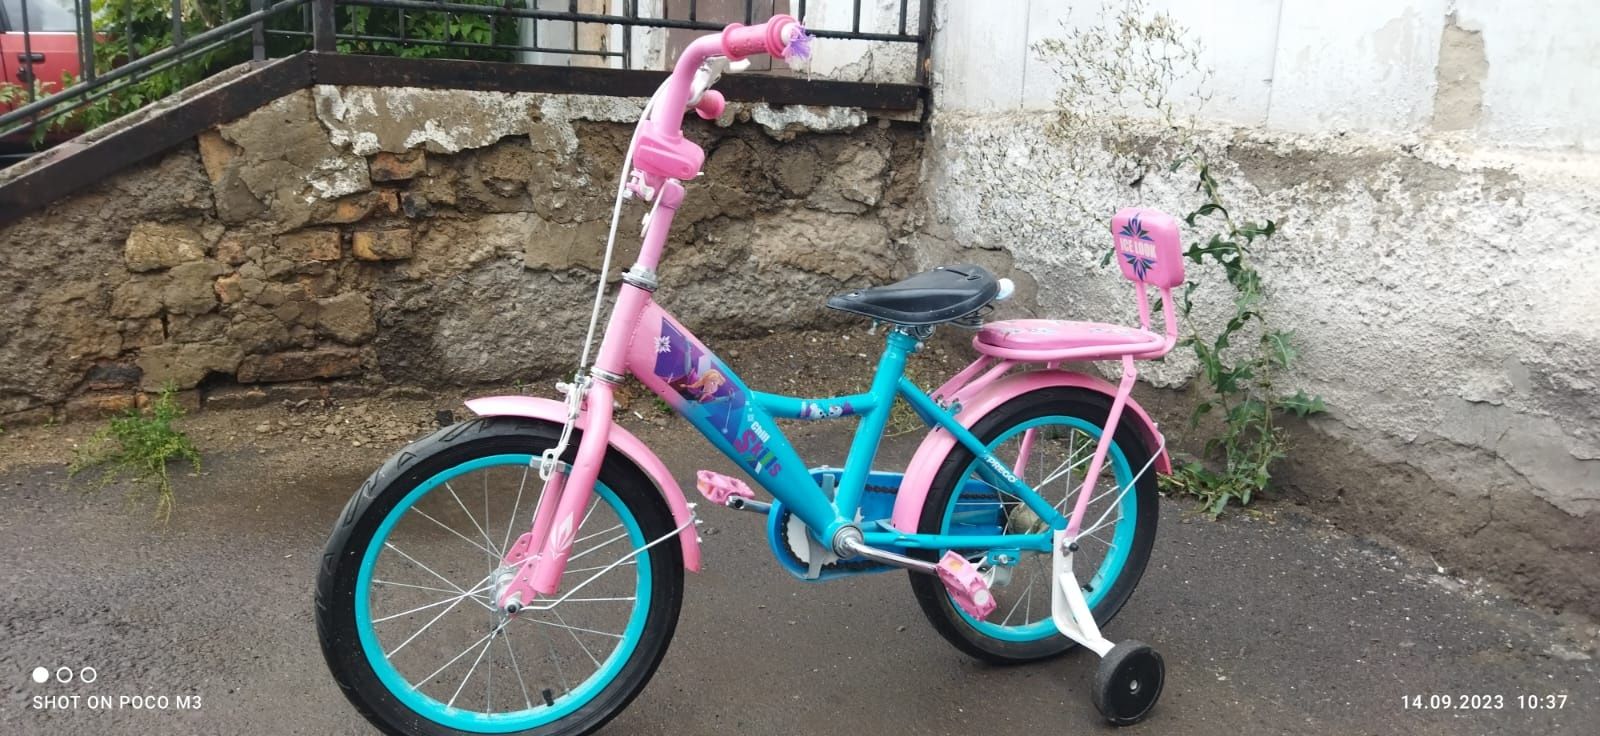 Продаётся детский велосипед